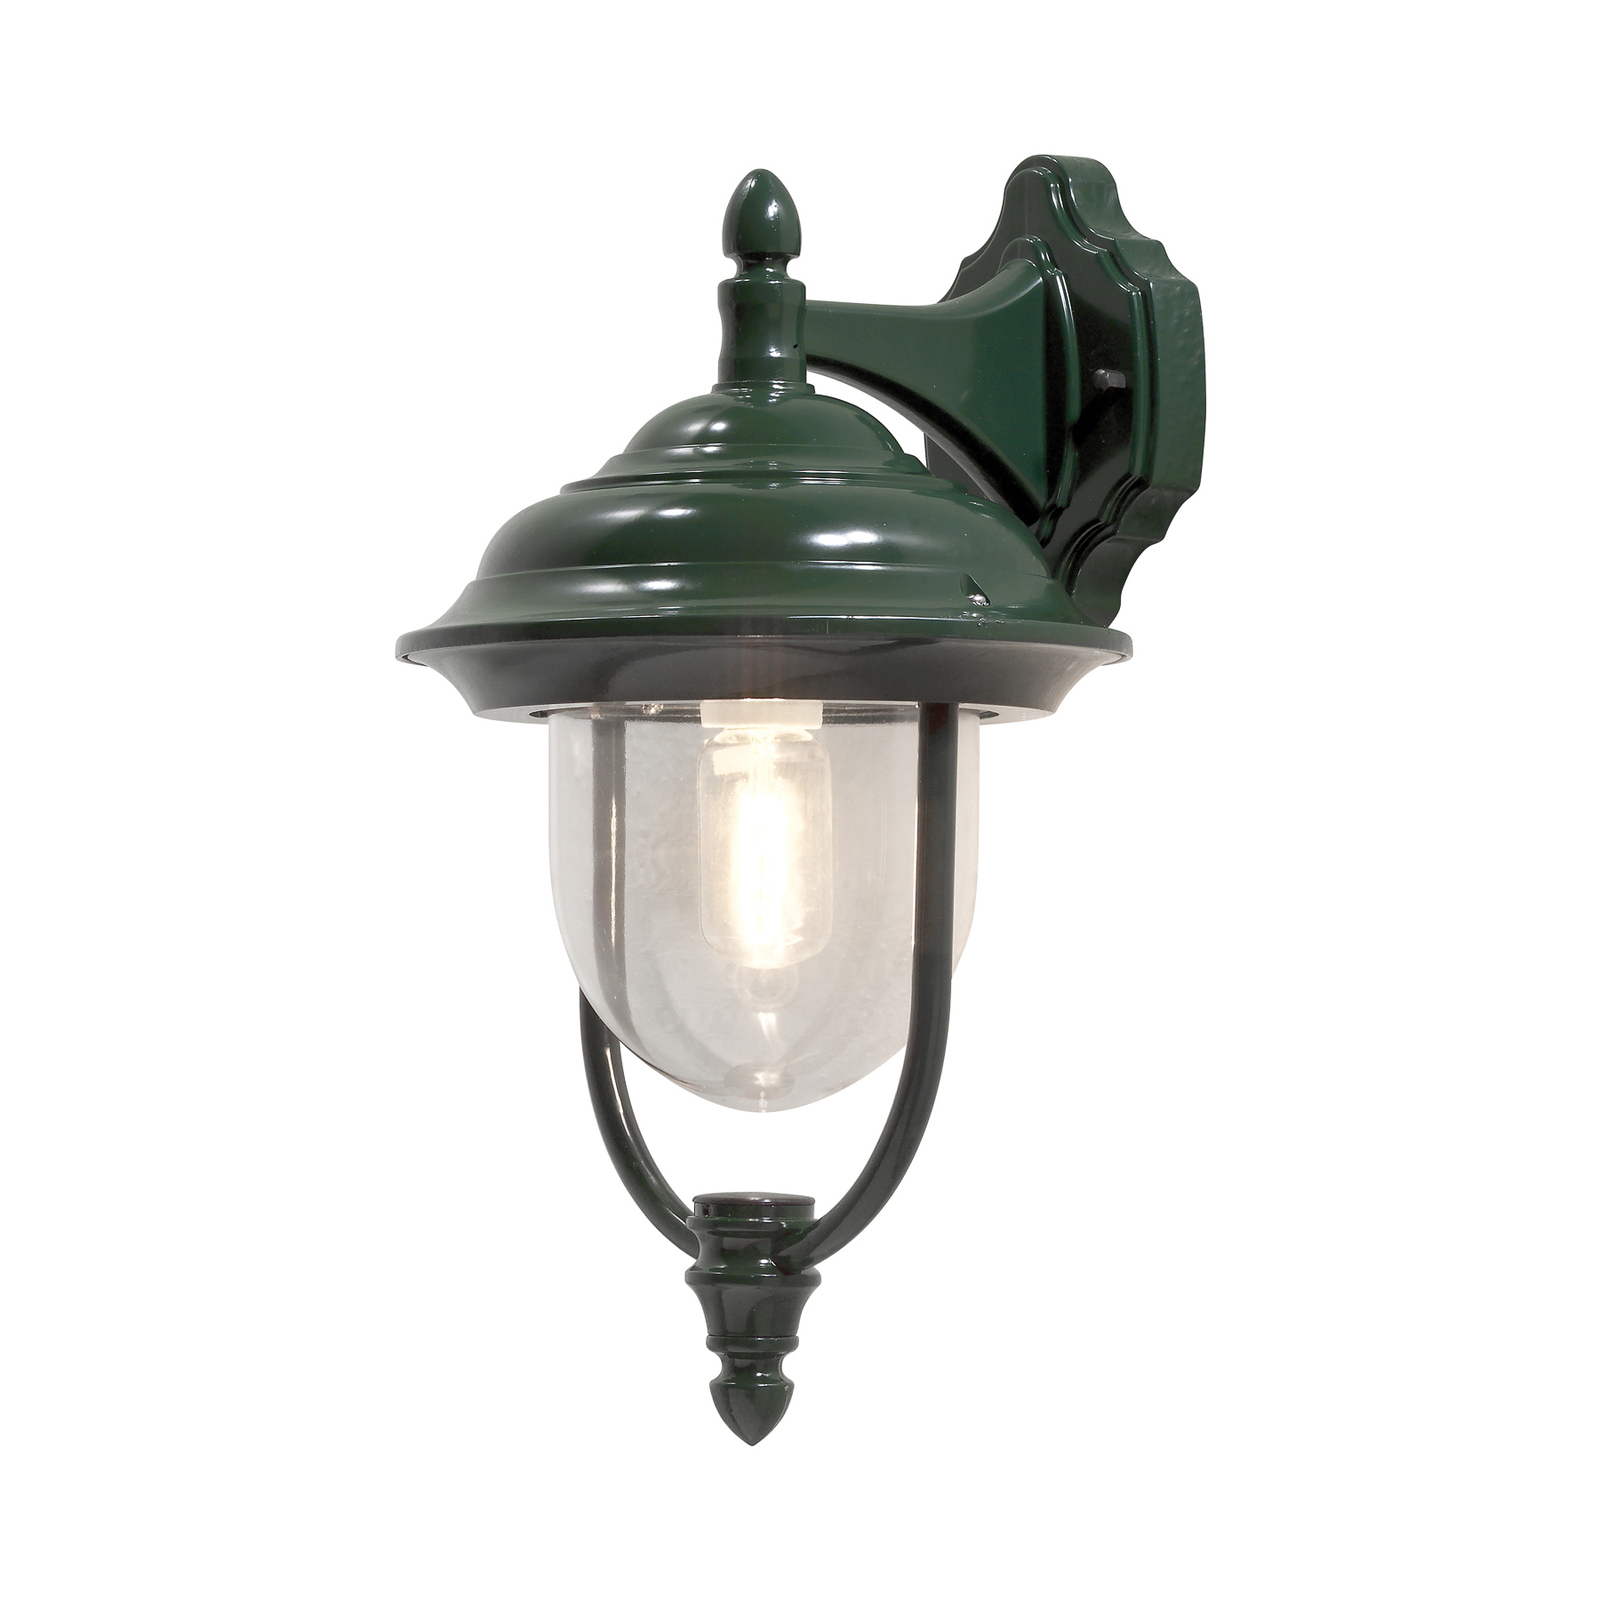 Kültéri fali lámpa Parma, lámpa lógó zöld színben